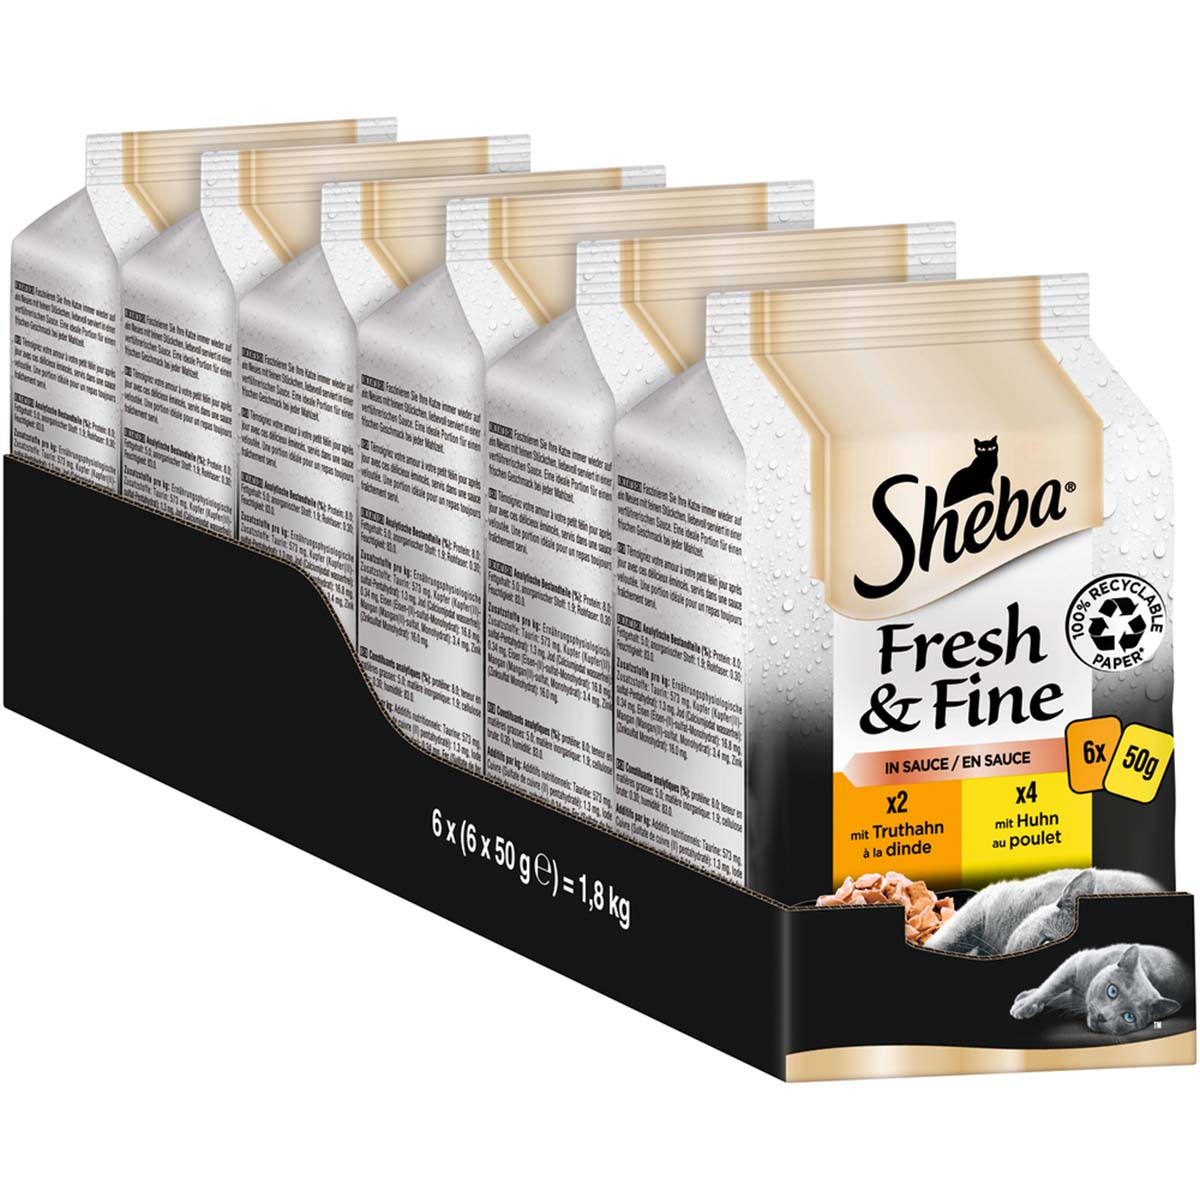 Sheba Fresh & Fine in Sauce mit Huhn & Truthahn 6x50g von Sheba